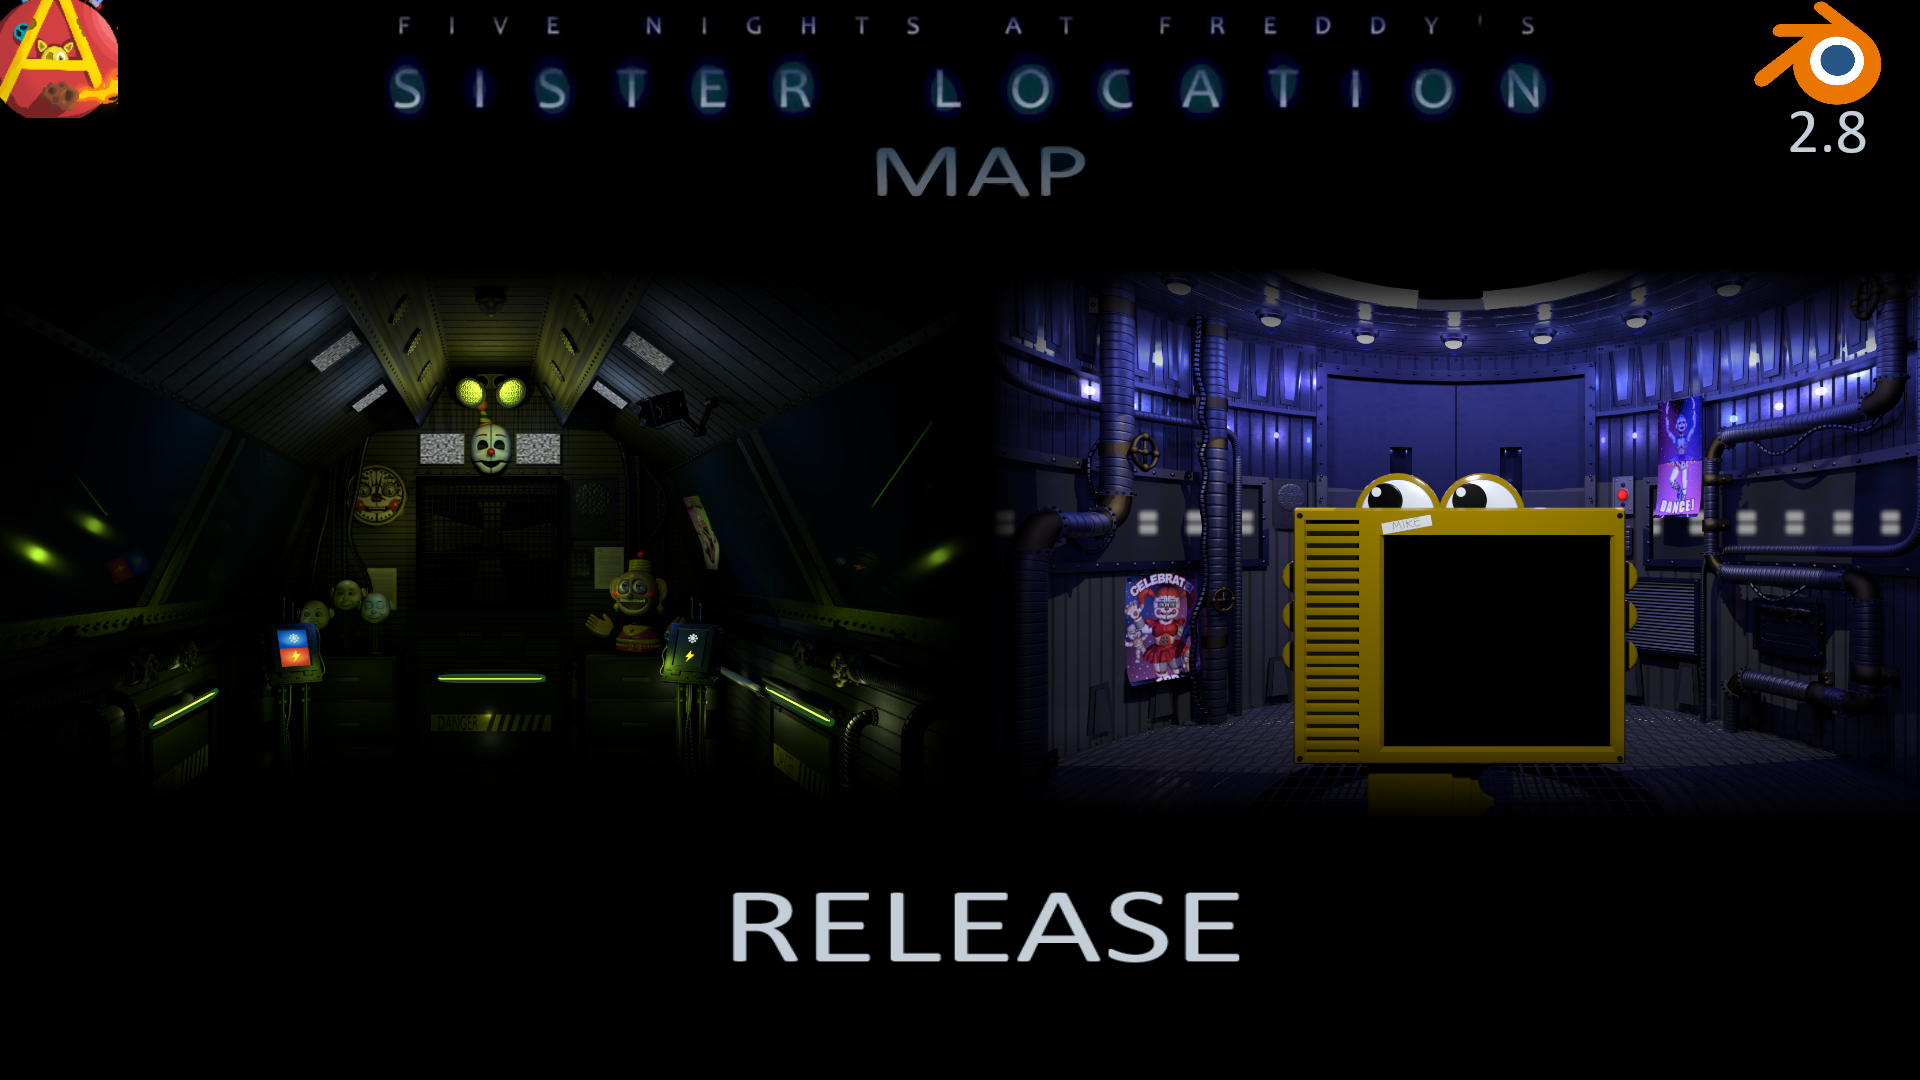 Fnaf 1 Map Release For Blender by Spinofan on DeviantArt